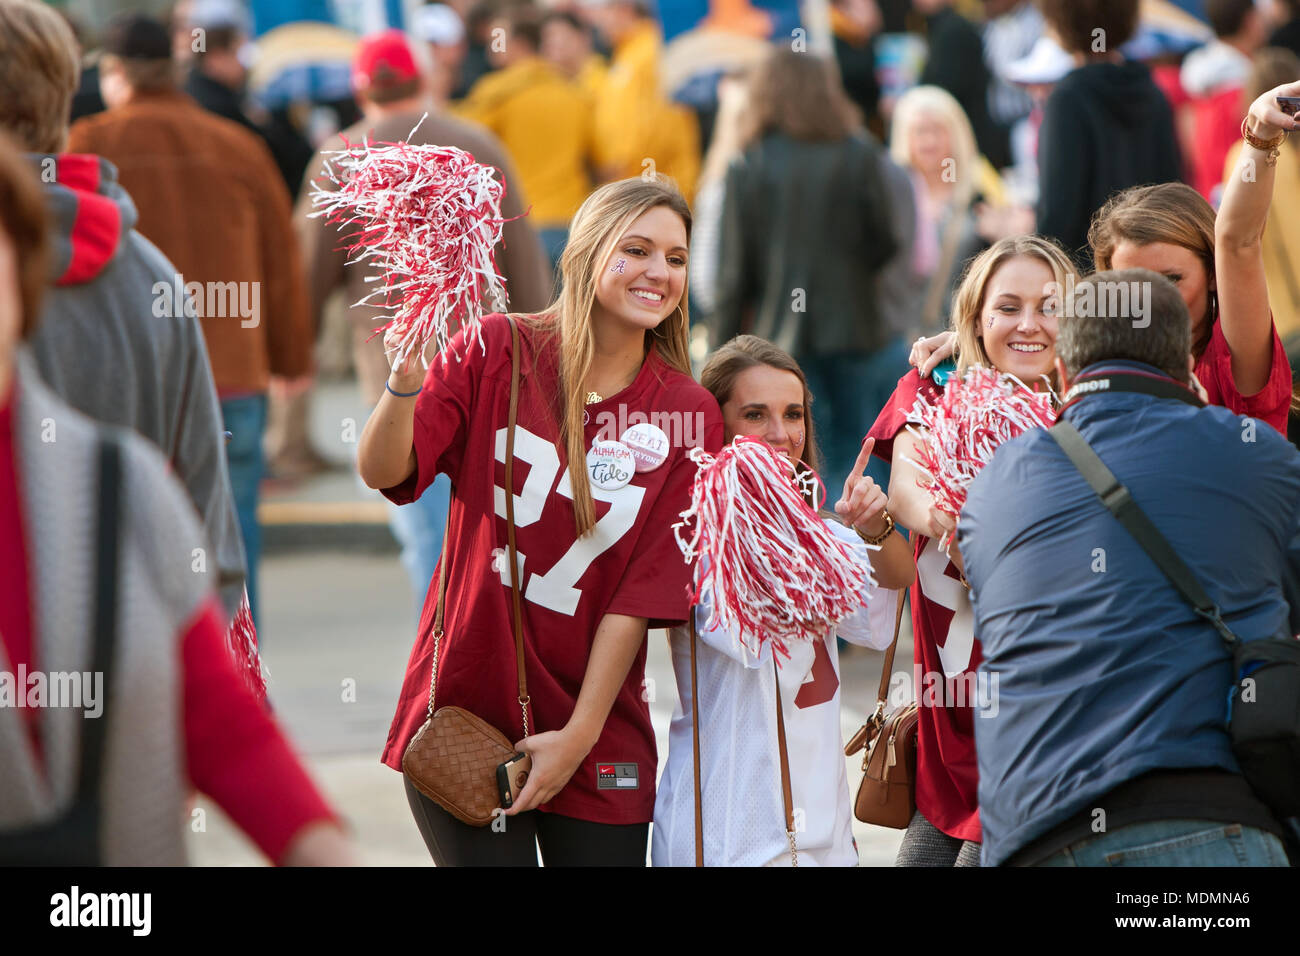 Weibliche Universität von Alabama fans gekleidet in Crimson posieren für Fotos auf dem Weg, die SEC Championship Game am 6. Dezember 2014 in Atlanta, GA. Stockfoto